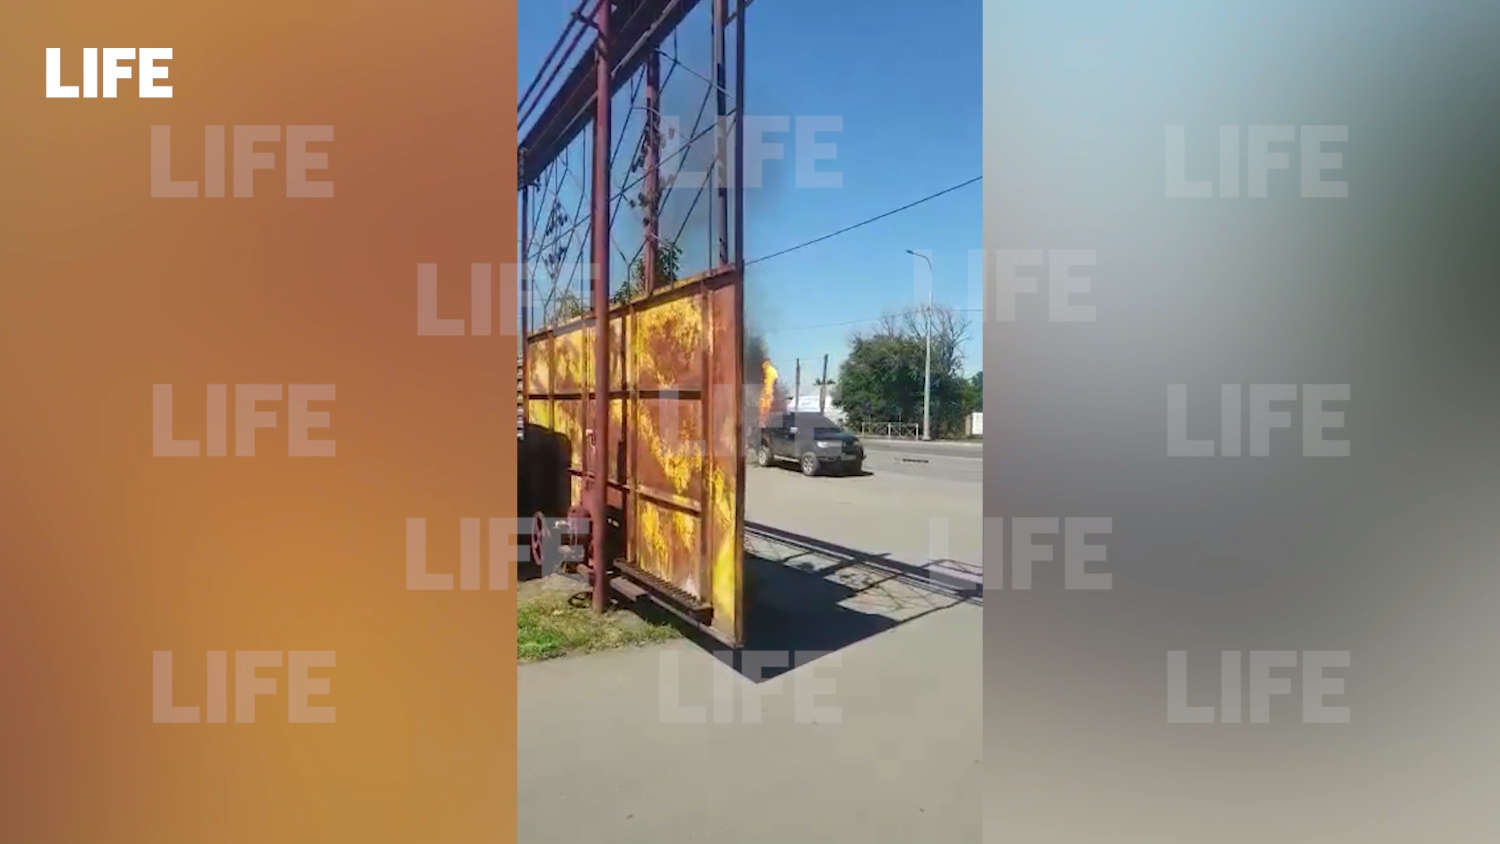 Разнесло на части: Момент взрыва газового баллона в машине в Ростовской области сняли на видео